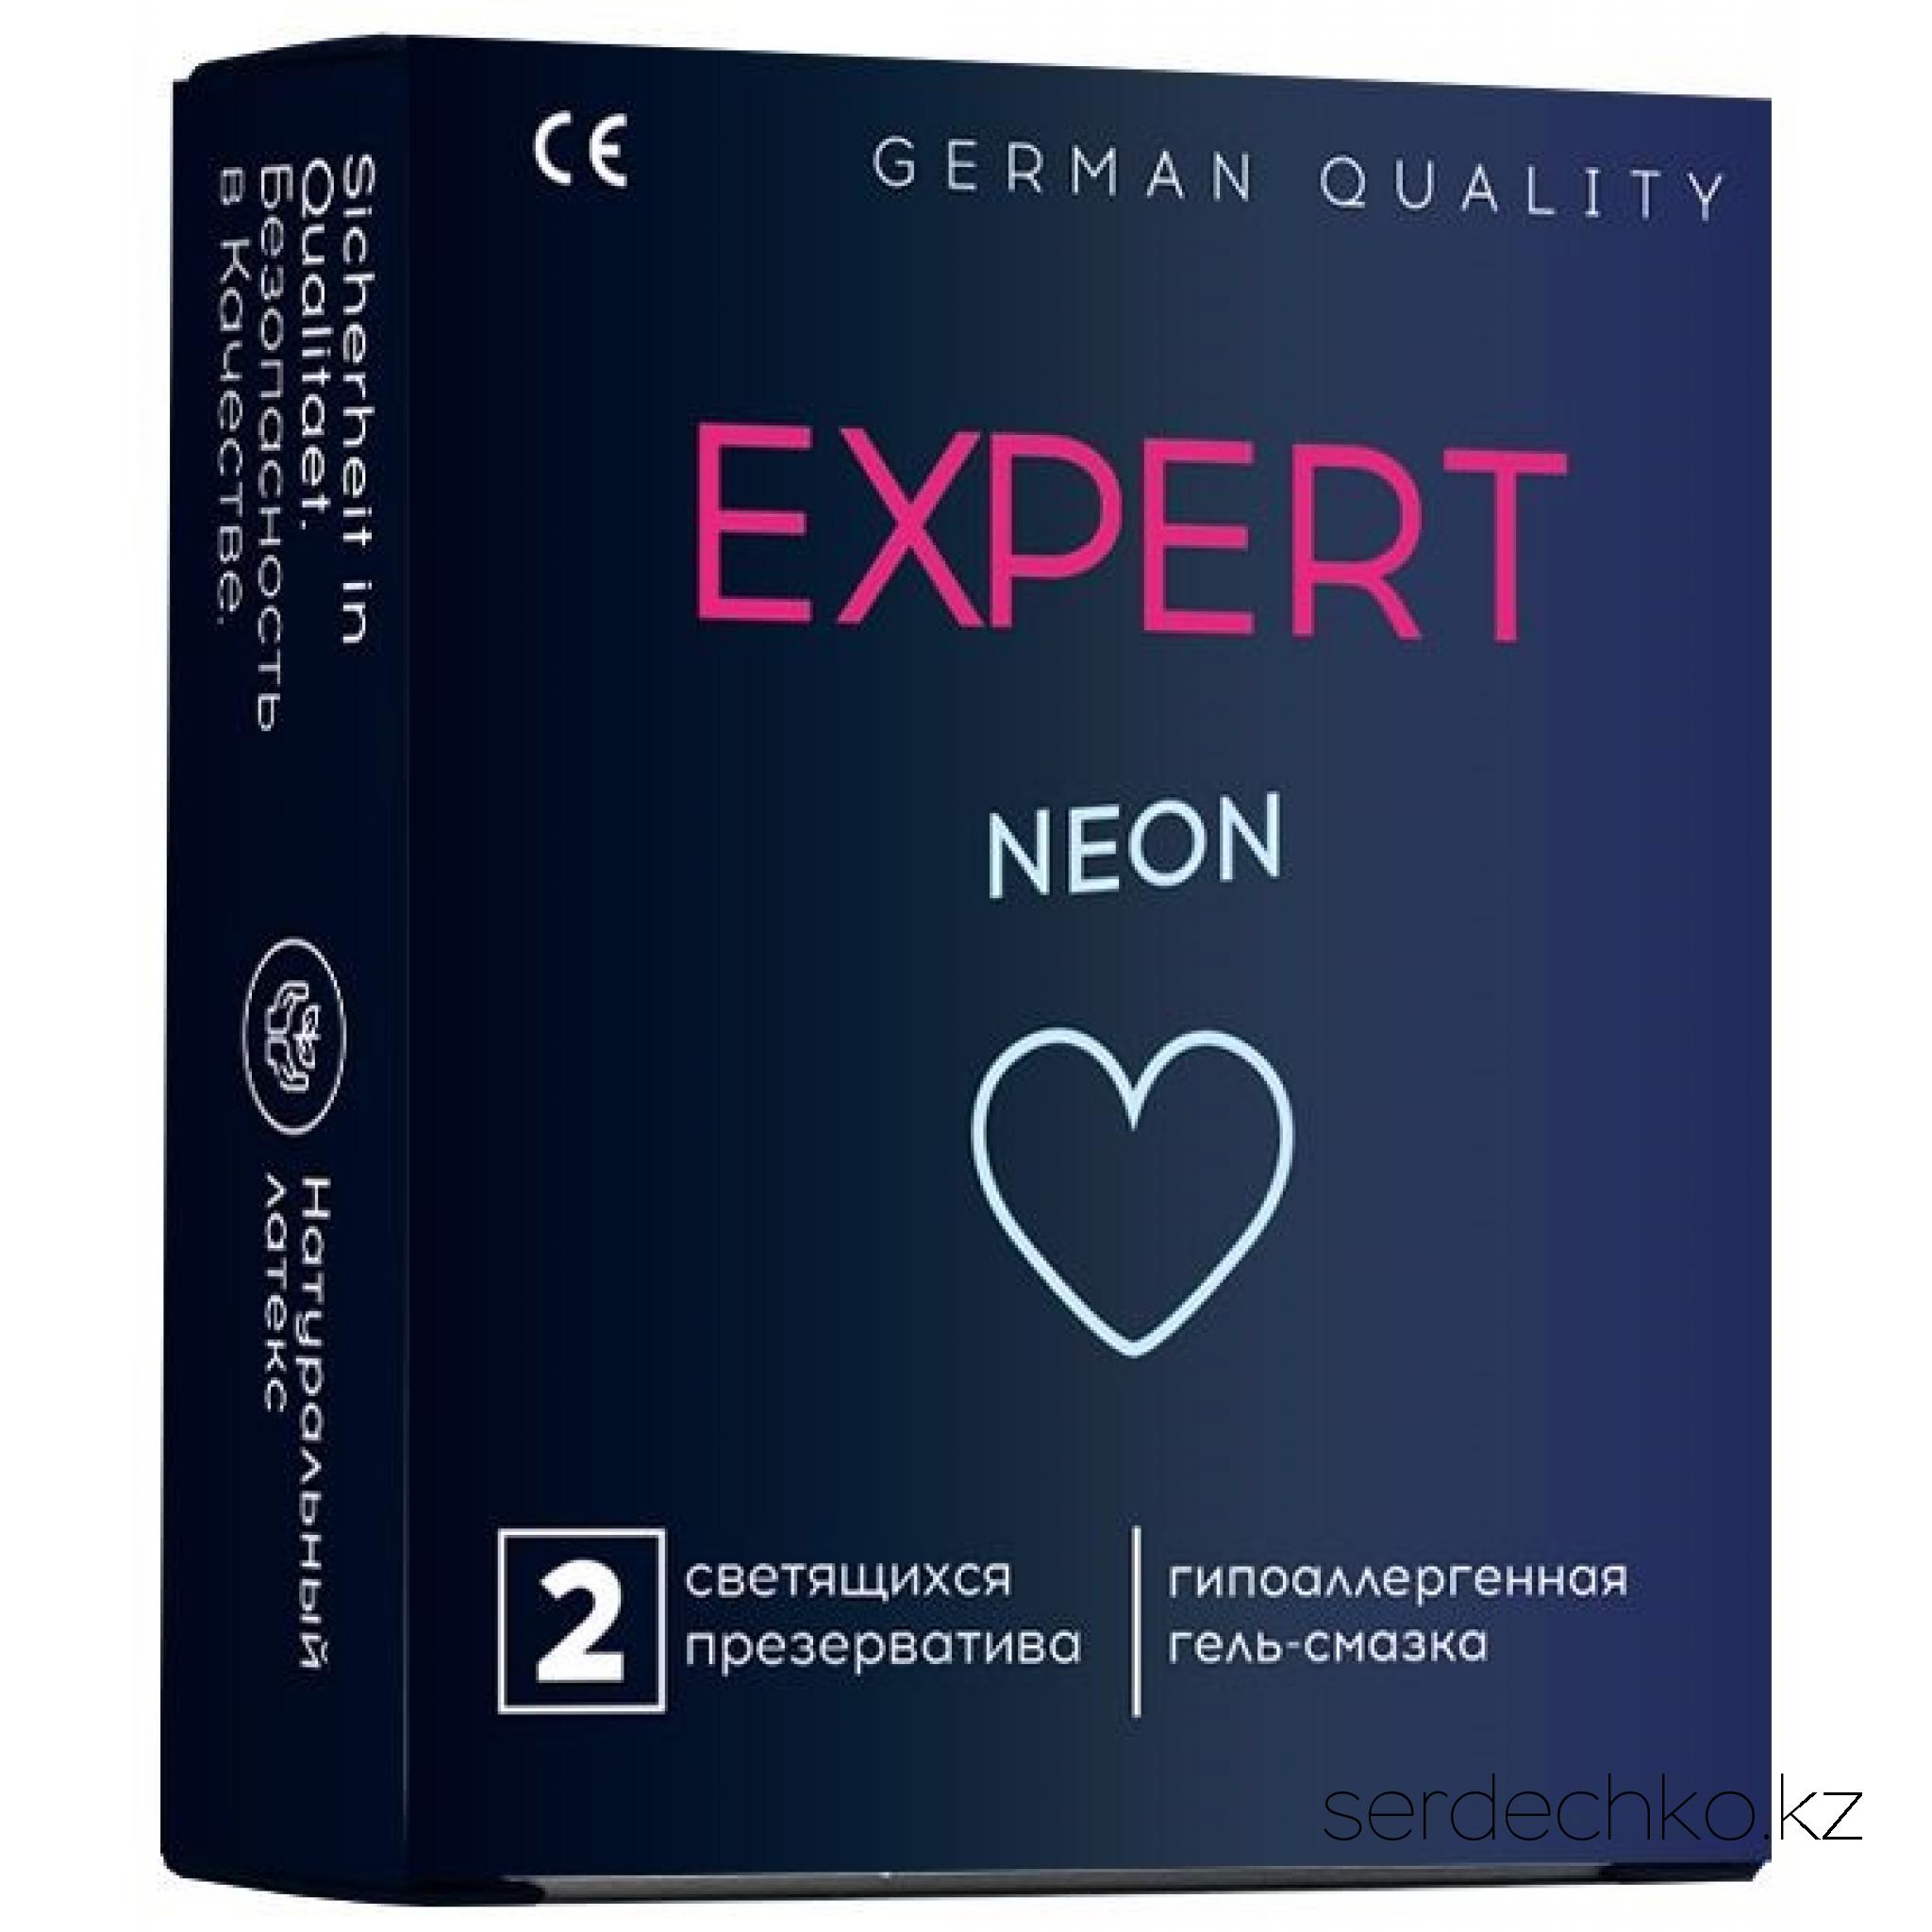 ПРЕЗЕРВАТИВЫ EXPERT NEON № 2 (СВЕТЯЩИЕСЯ), 2 штуки, 
	NEON - Гладкие латексные презервативы, обработанные силиконовой смазкой со светящимся слоем.
